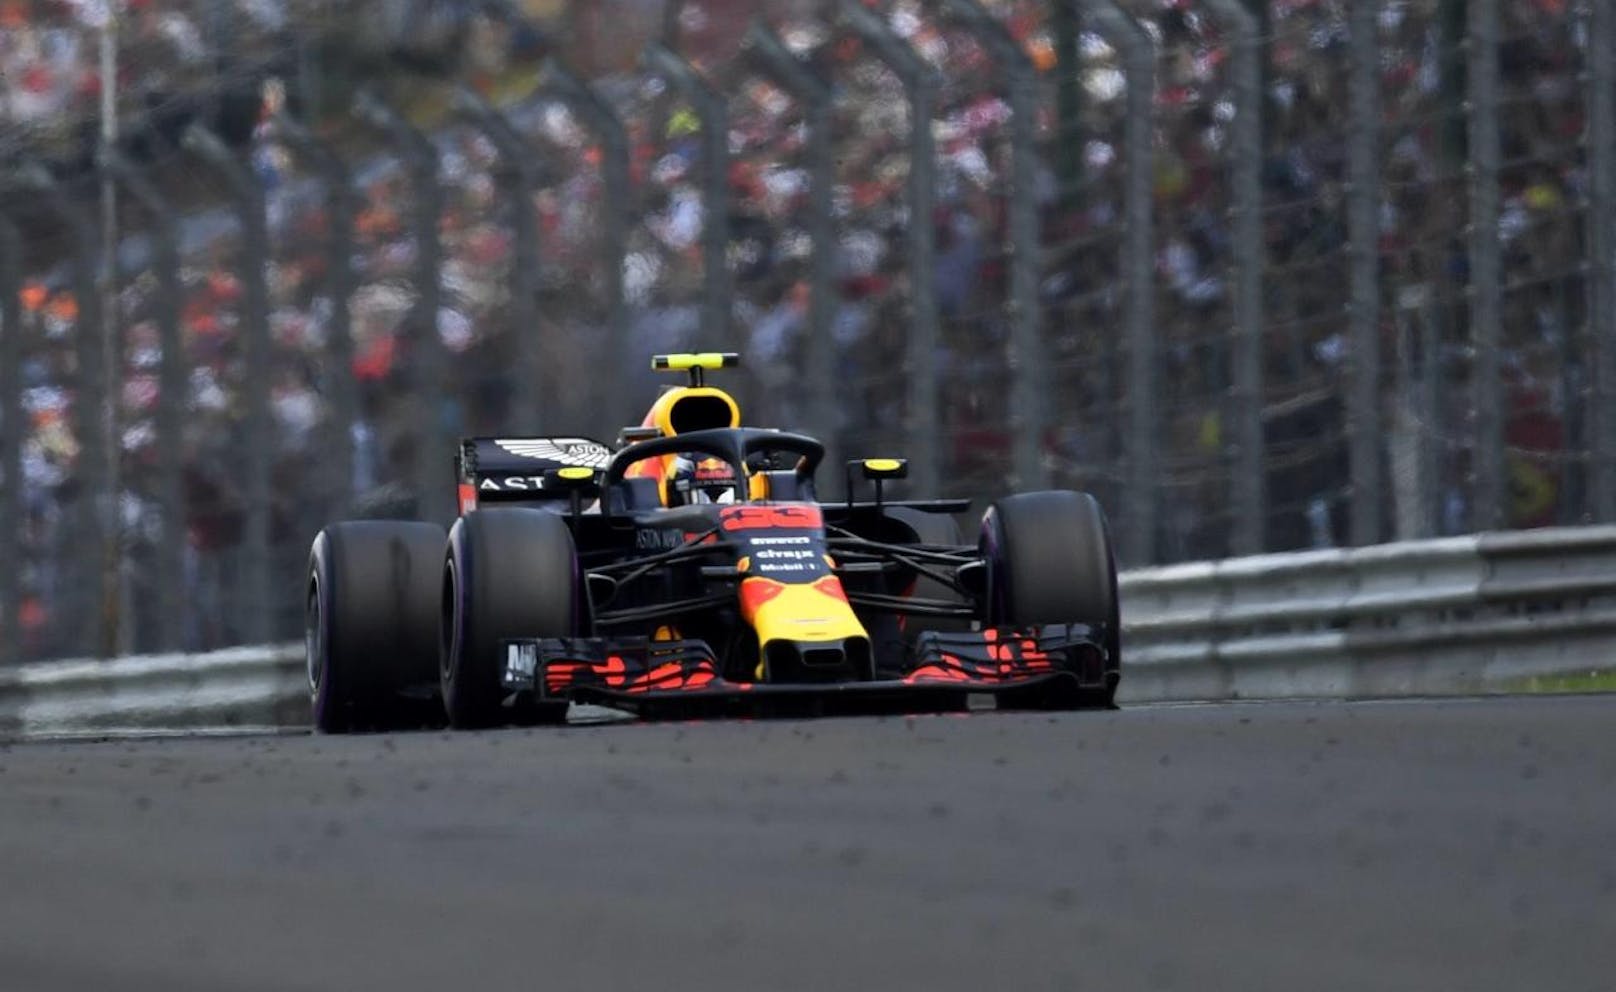 <b>Platz 3
</b>Red Bull Racing: 124 Millionen Euro